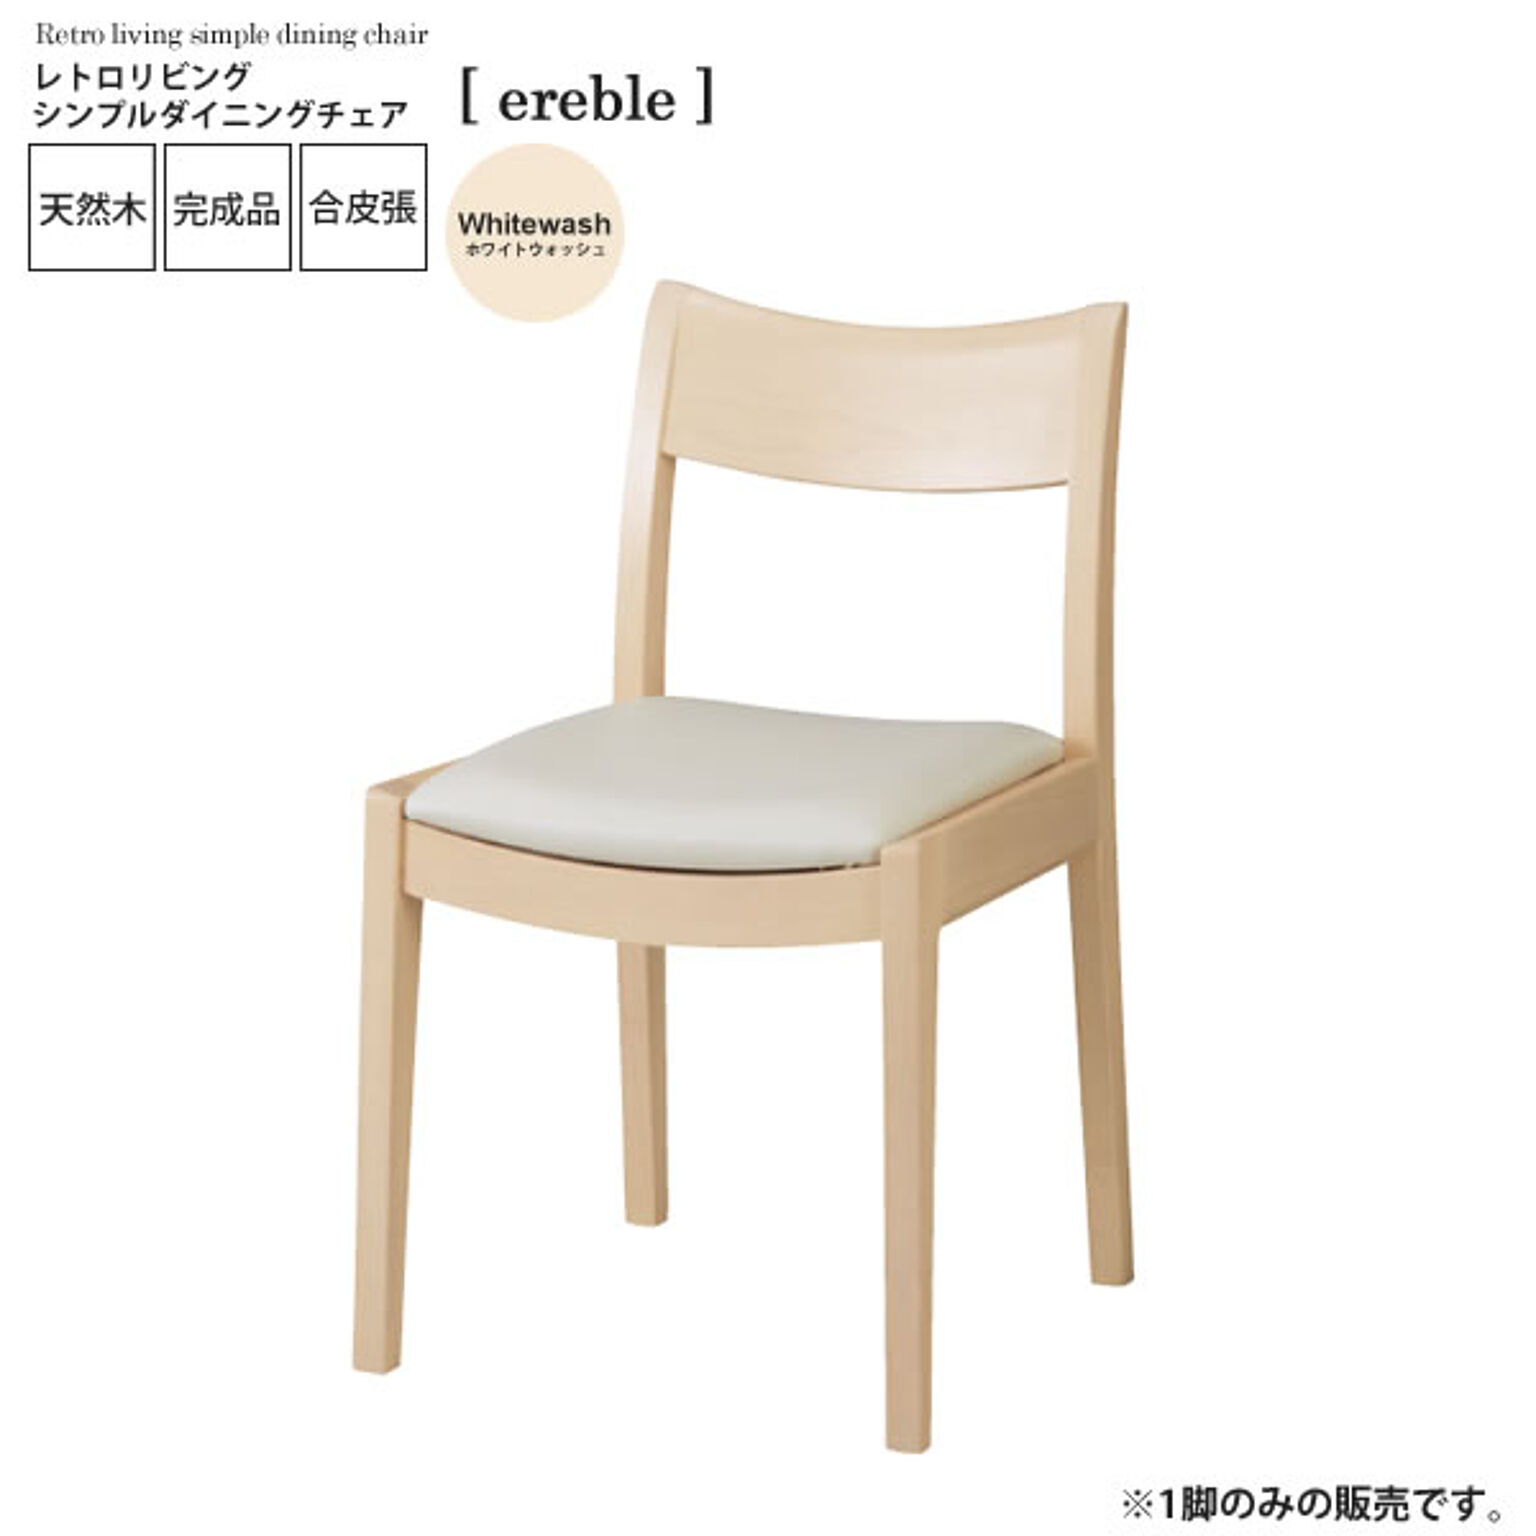 ホワイトウォッシュ ： レトロリビング シンプルダイニングチェア【ereble】 ホワイト(white) (ナチュラル) イス 椅子 リビングチェア ワーク デスクチェア 